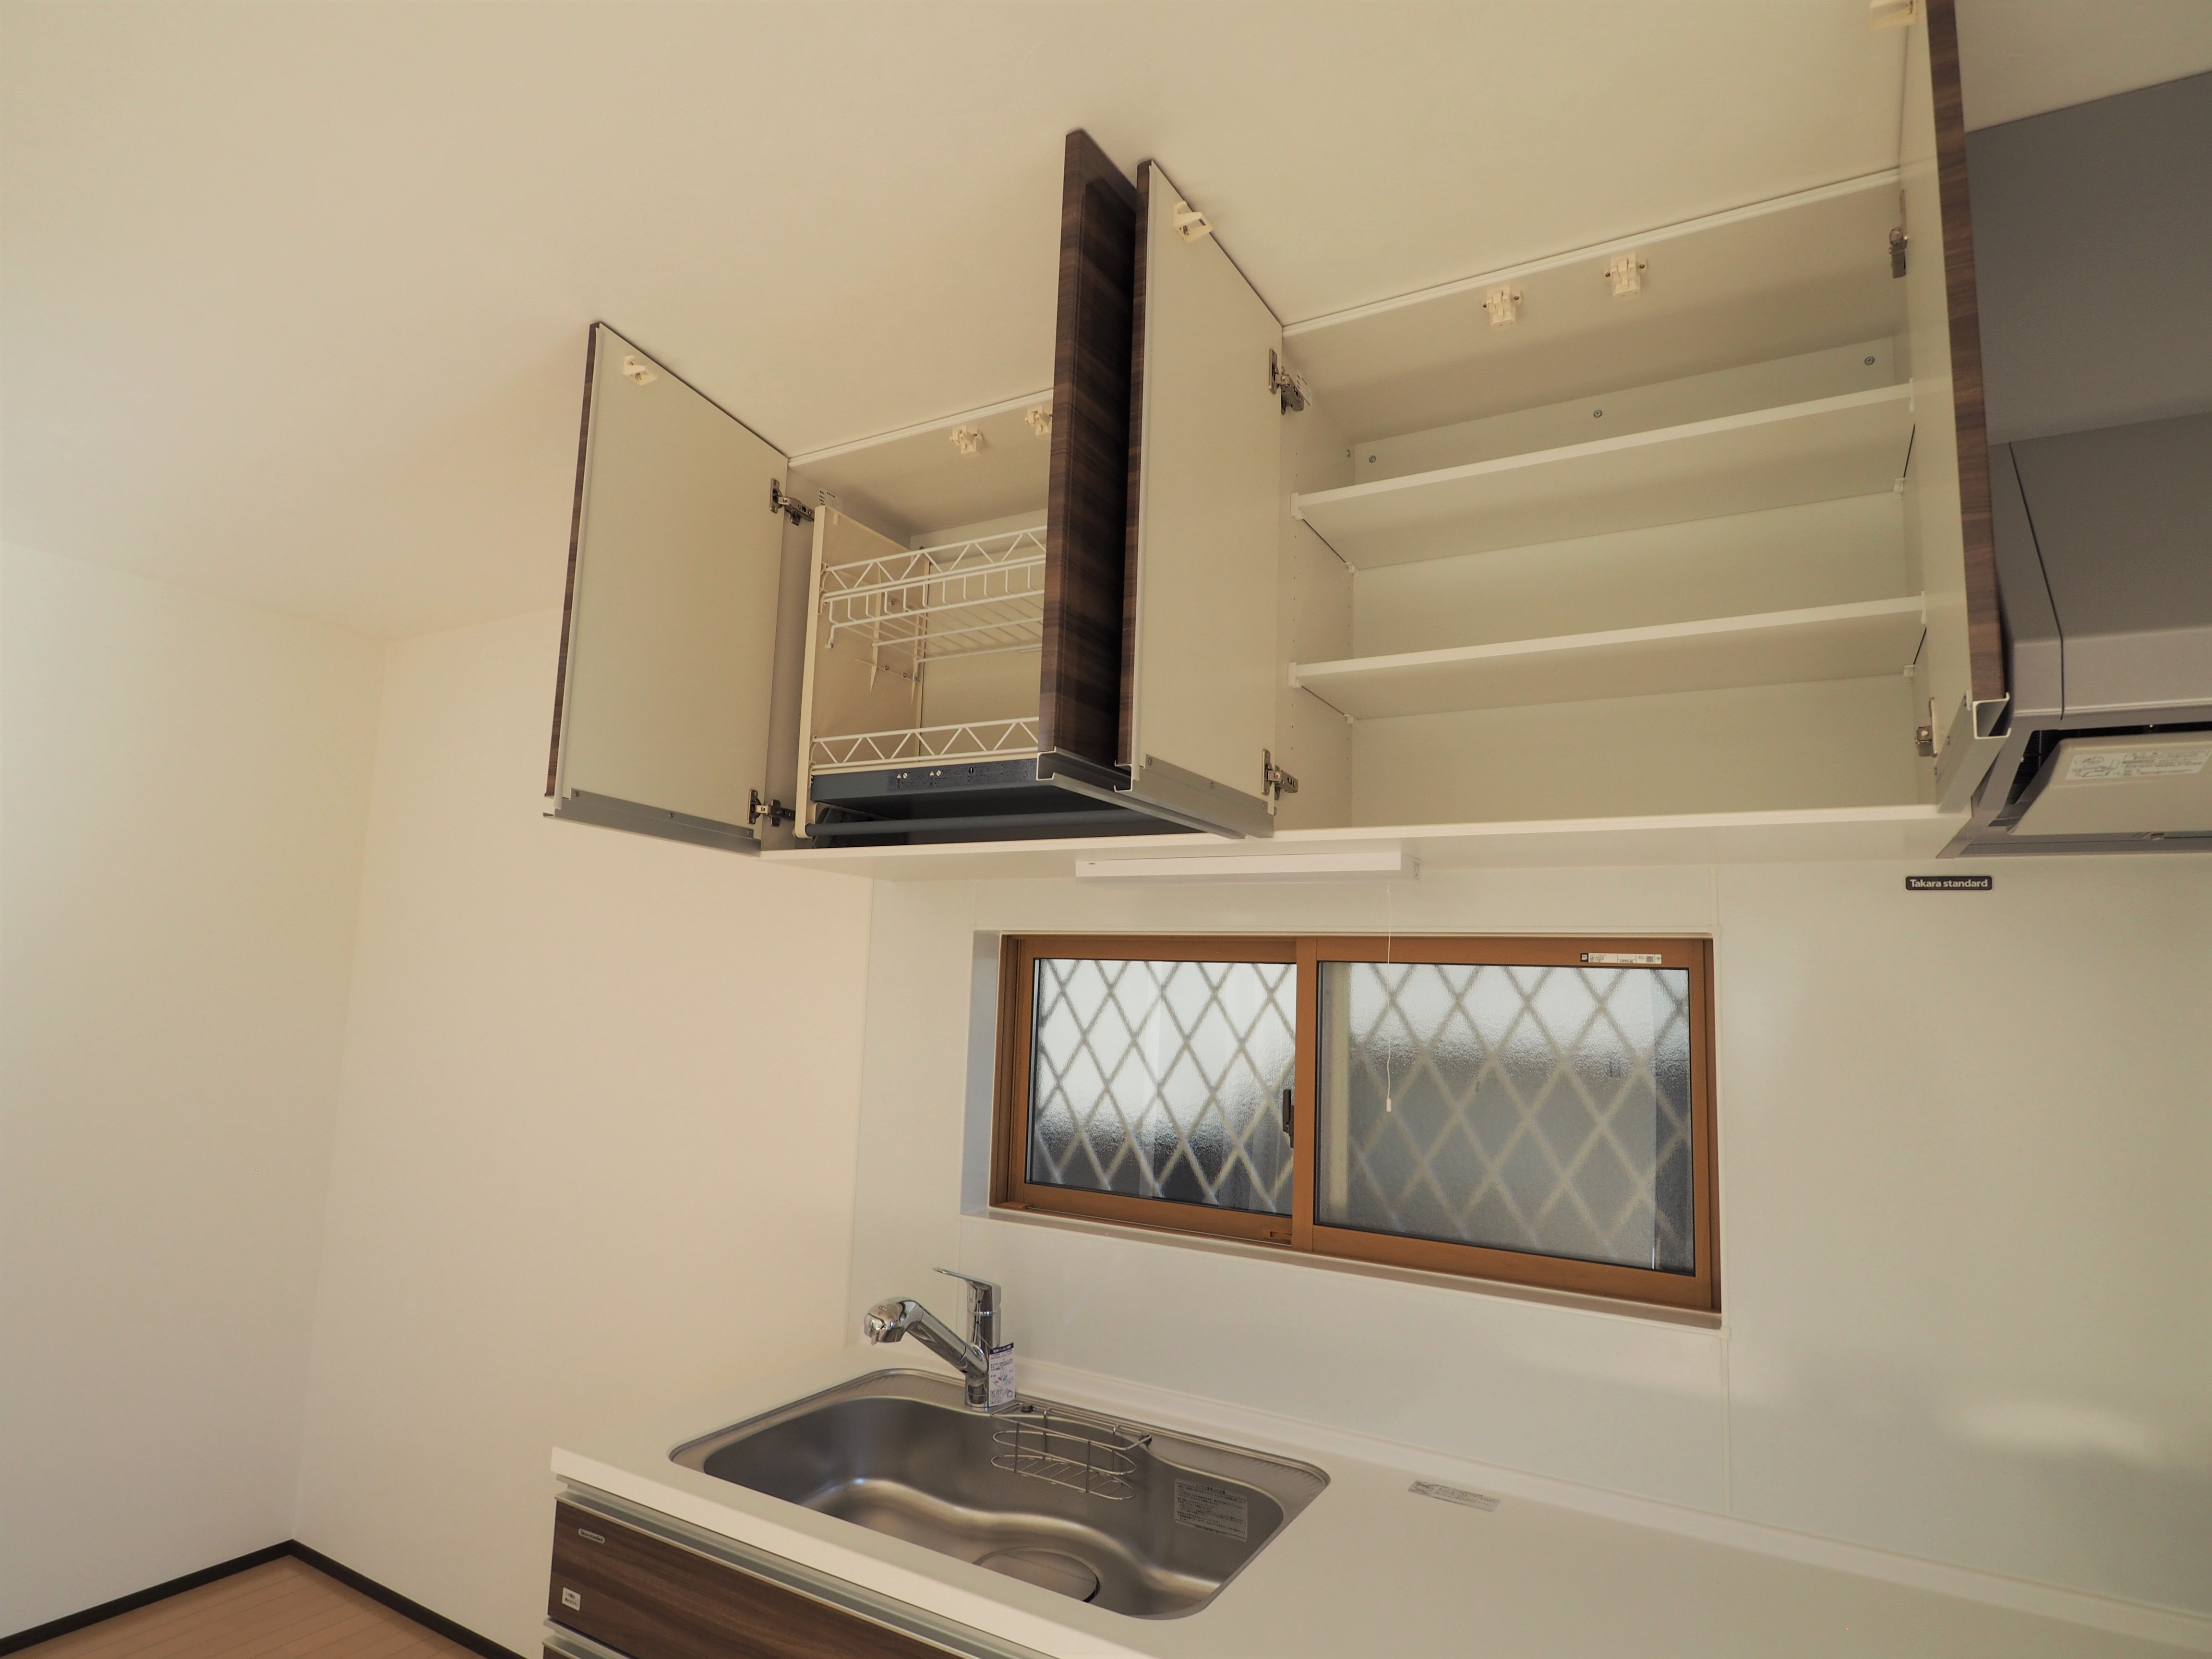 所沢上安松新築戸建て住宅のシステムキッチンの昇降式収納棚画像